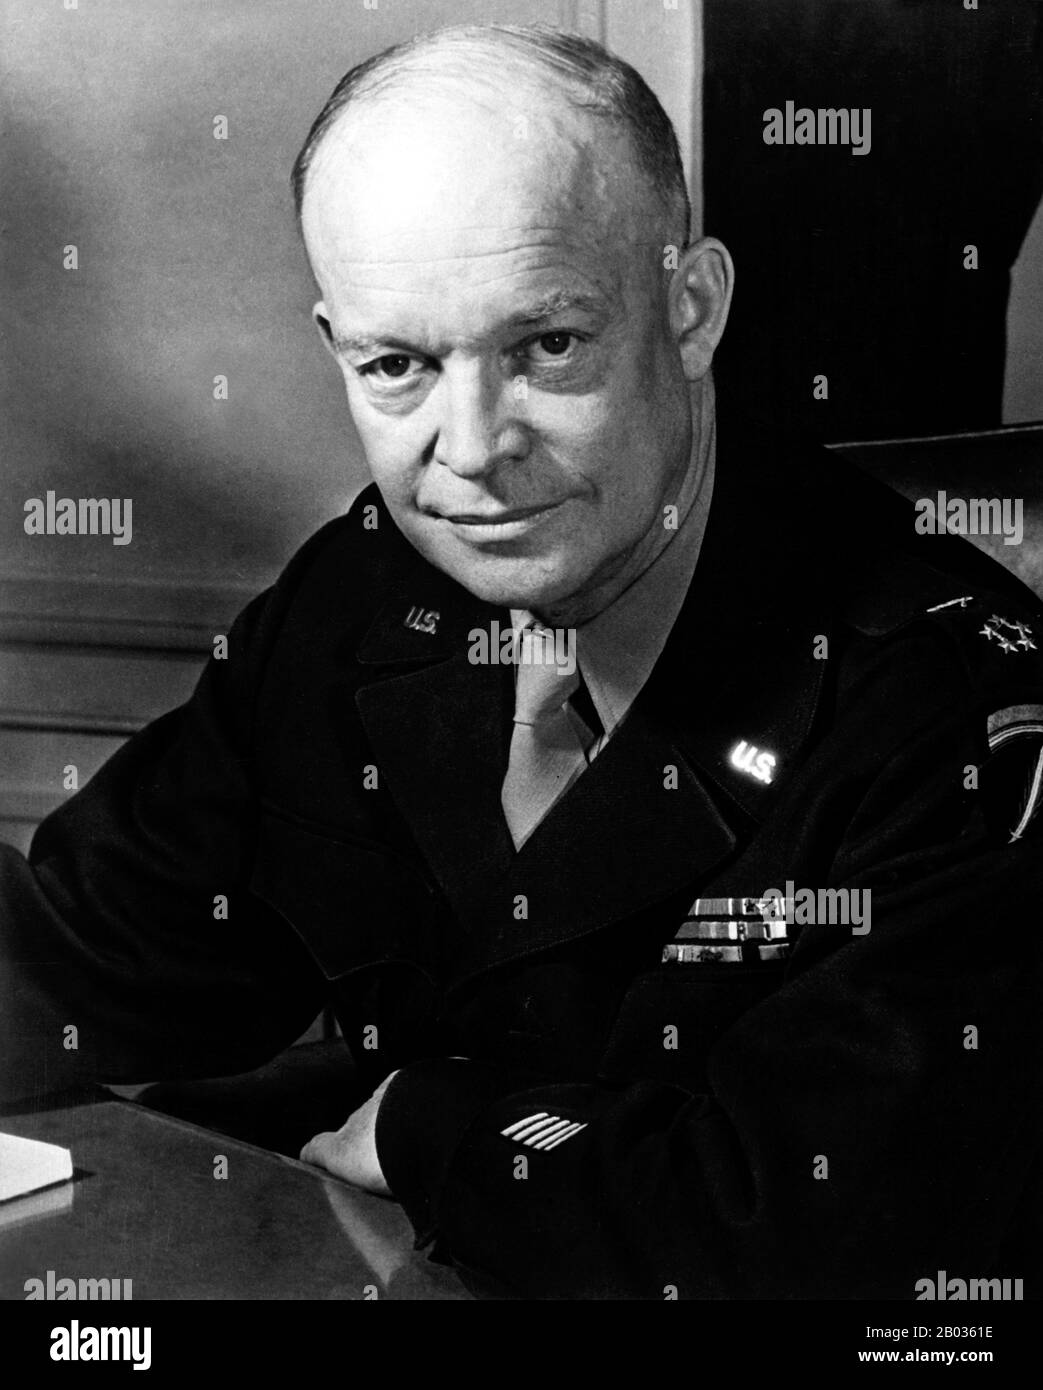 Dwight David 'Ike' Eisenhower (14. Oktober 1890 - 28. März 1969) war ein US-amerikanischer Politiker und General, der von 1953 bis 1961 als 34. Präsident der Vereinigten Staaten tätig war. Er war während des zweiten Weltkriegs Fünf-Sterne-General in der United States Army und diente als Oberster Befehlshaber der alliierten Streitkräfte in Europa. Eisenhower war für die Planung und Überwachung der Invasion Nordafrikas in Der Operation Torch in den Jahren 1942-43 und der erfolgreichen Invasion Frankreichs und Deutschlands in den Jahren 1944-45 von der Westfront verantwortlich. 1951 wurde er der erste Oberste Befehlshaber der NATO. Stockfoto